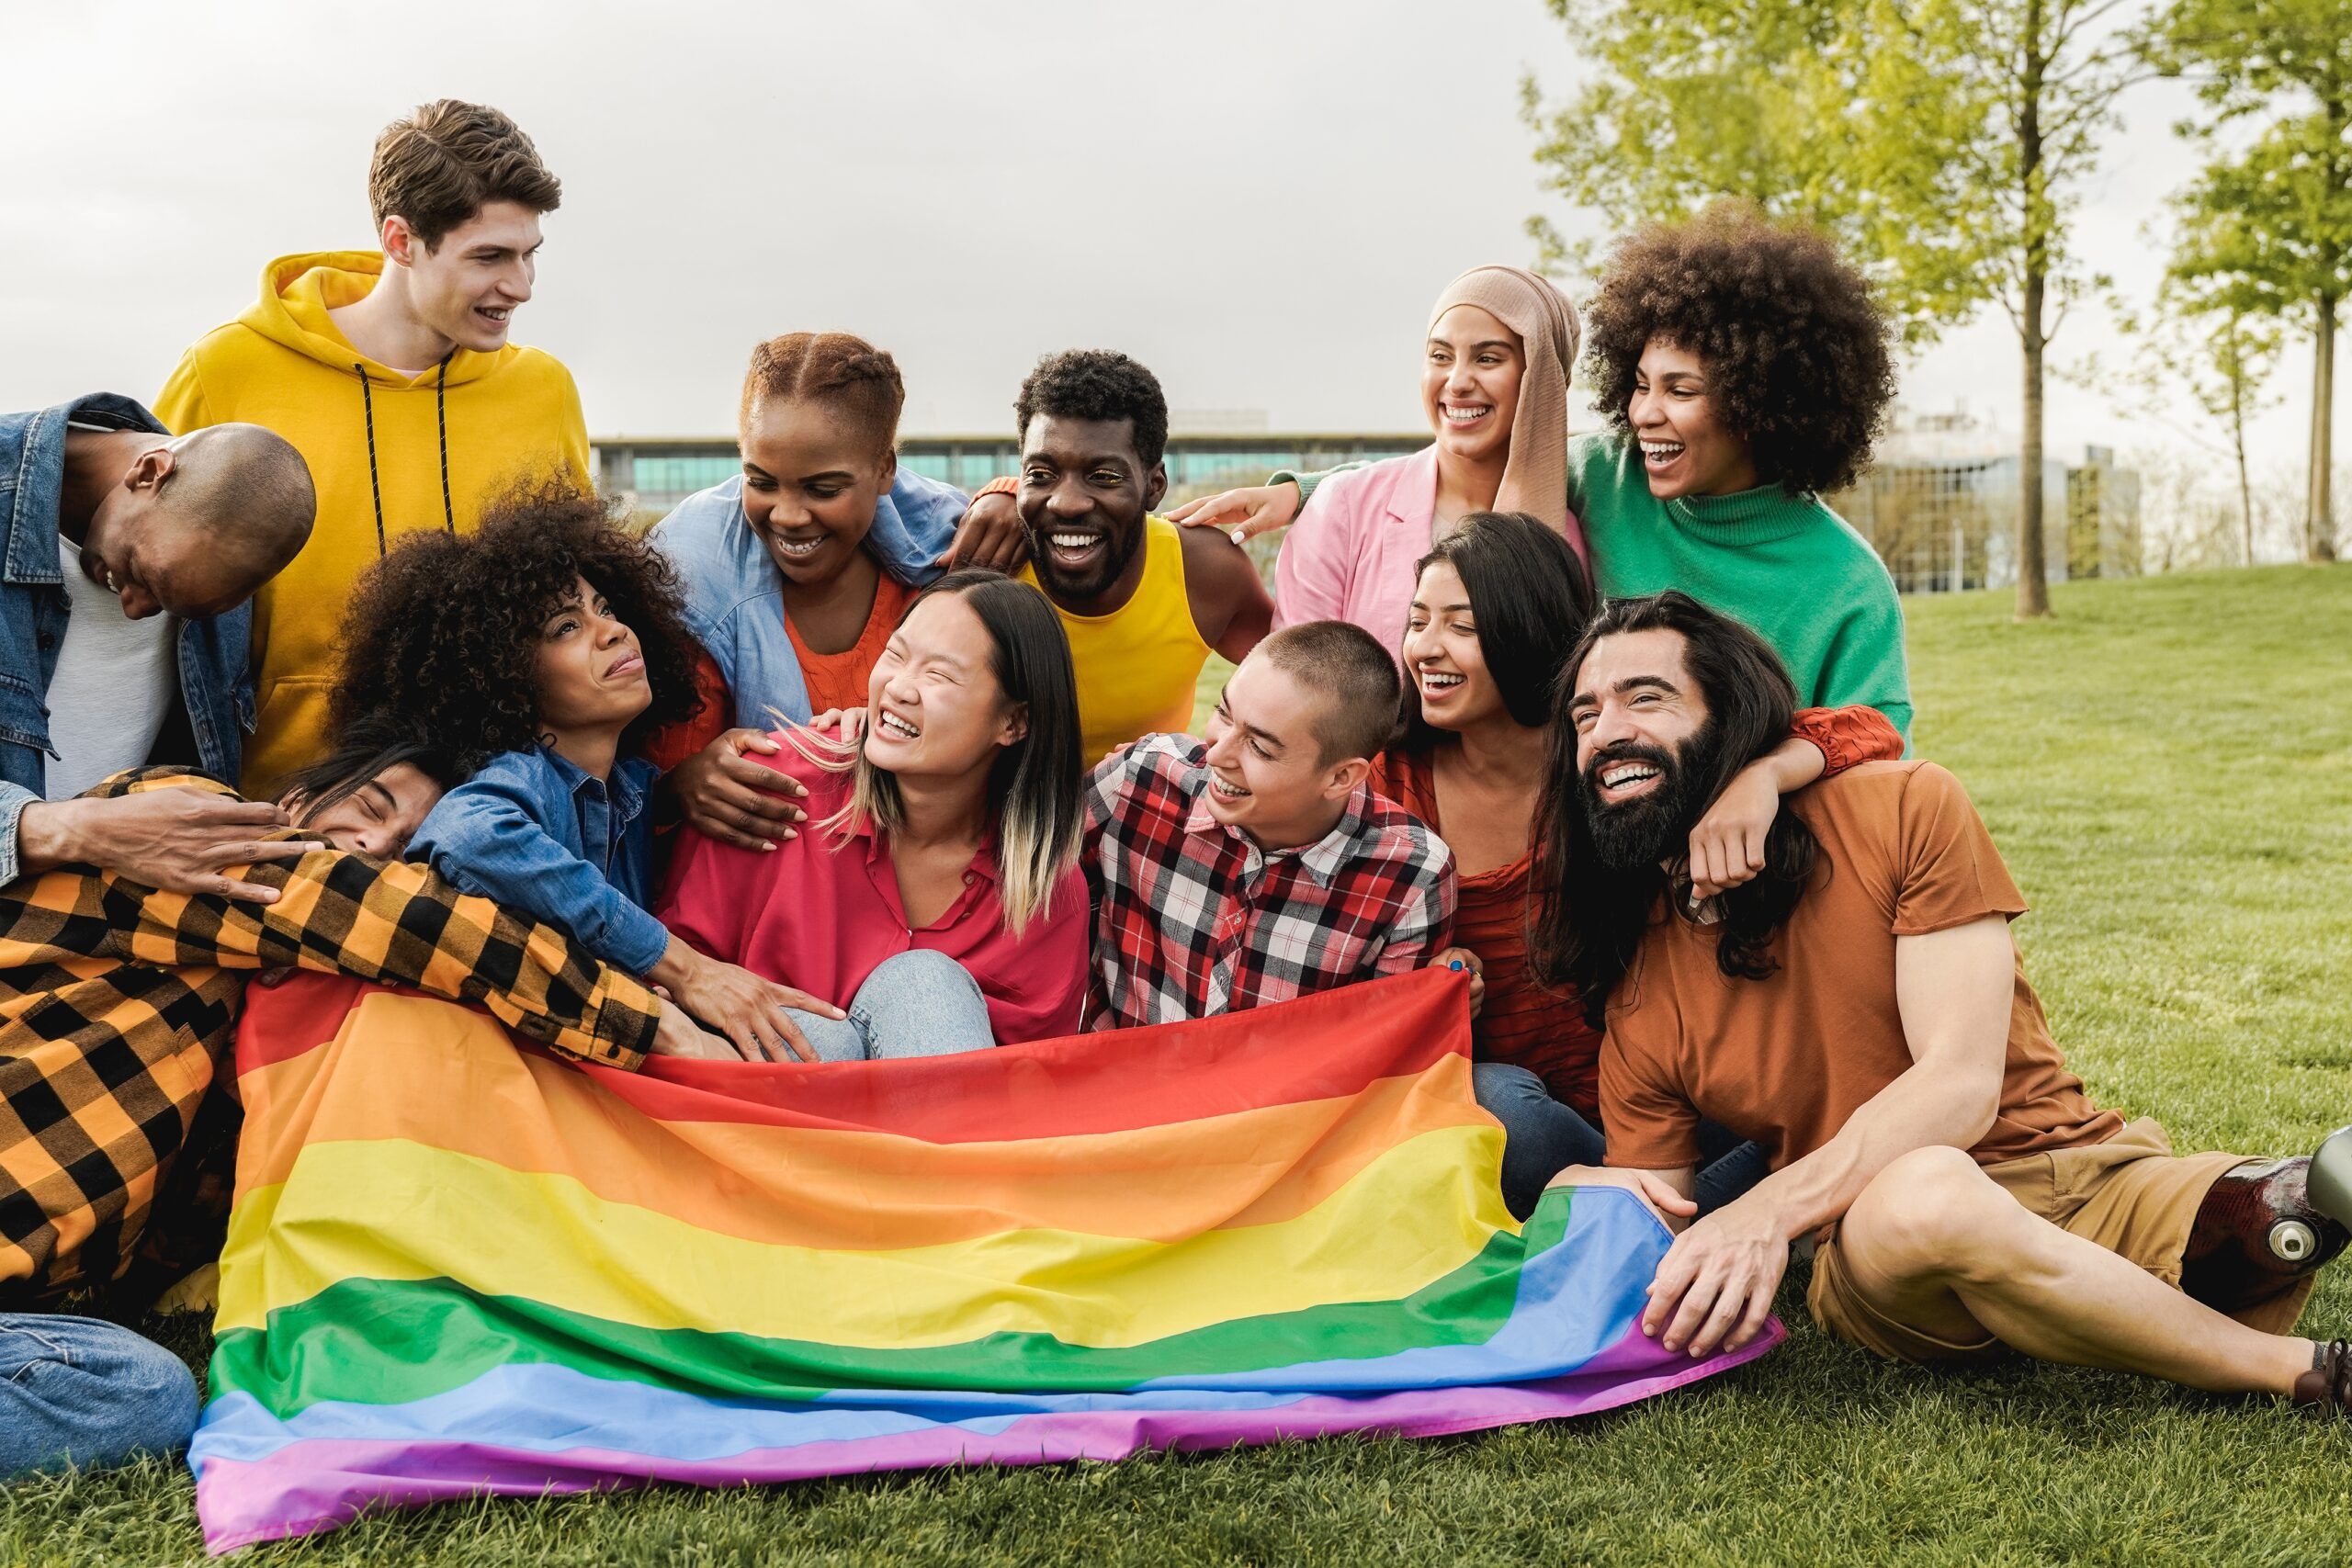 Potenziare i giovani LGBTQ+: costruire spazi sicuri per la crescita e l'accettazione